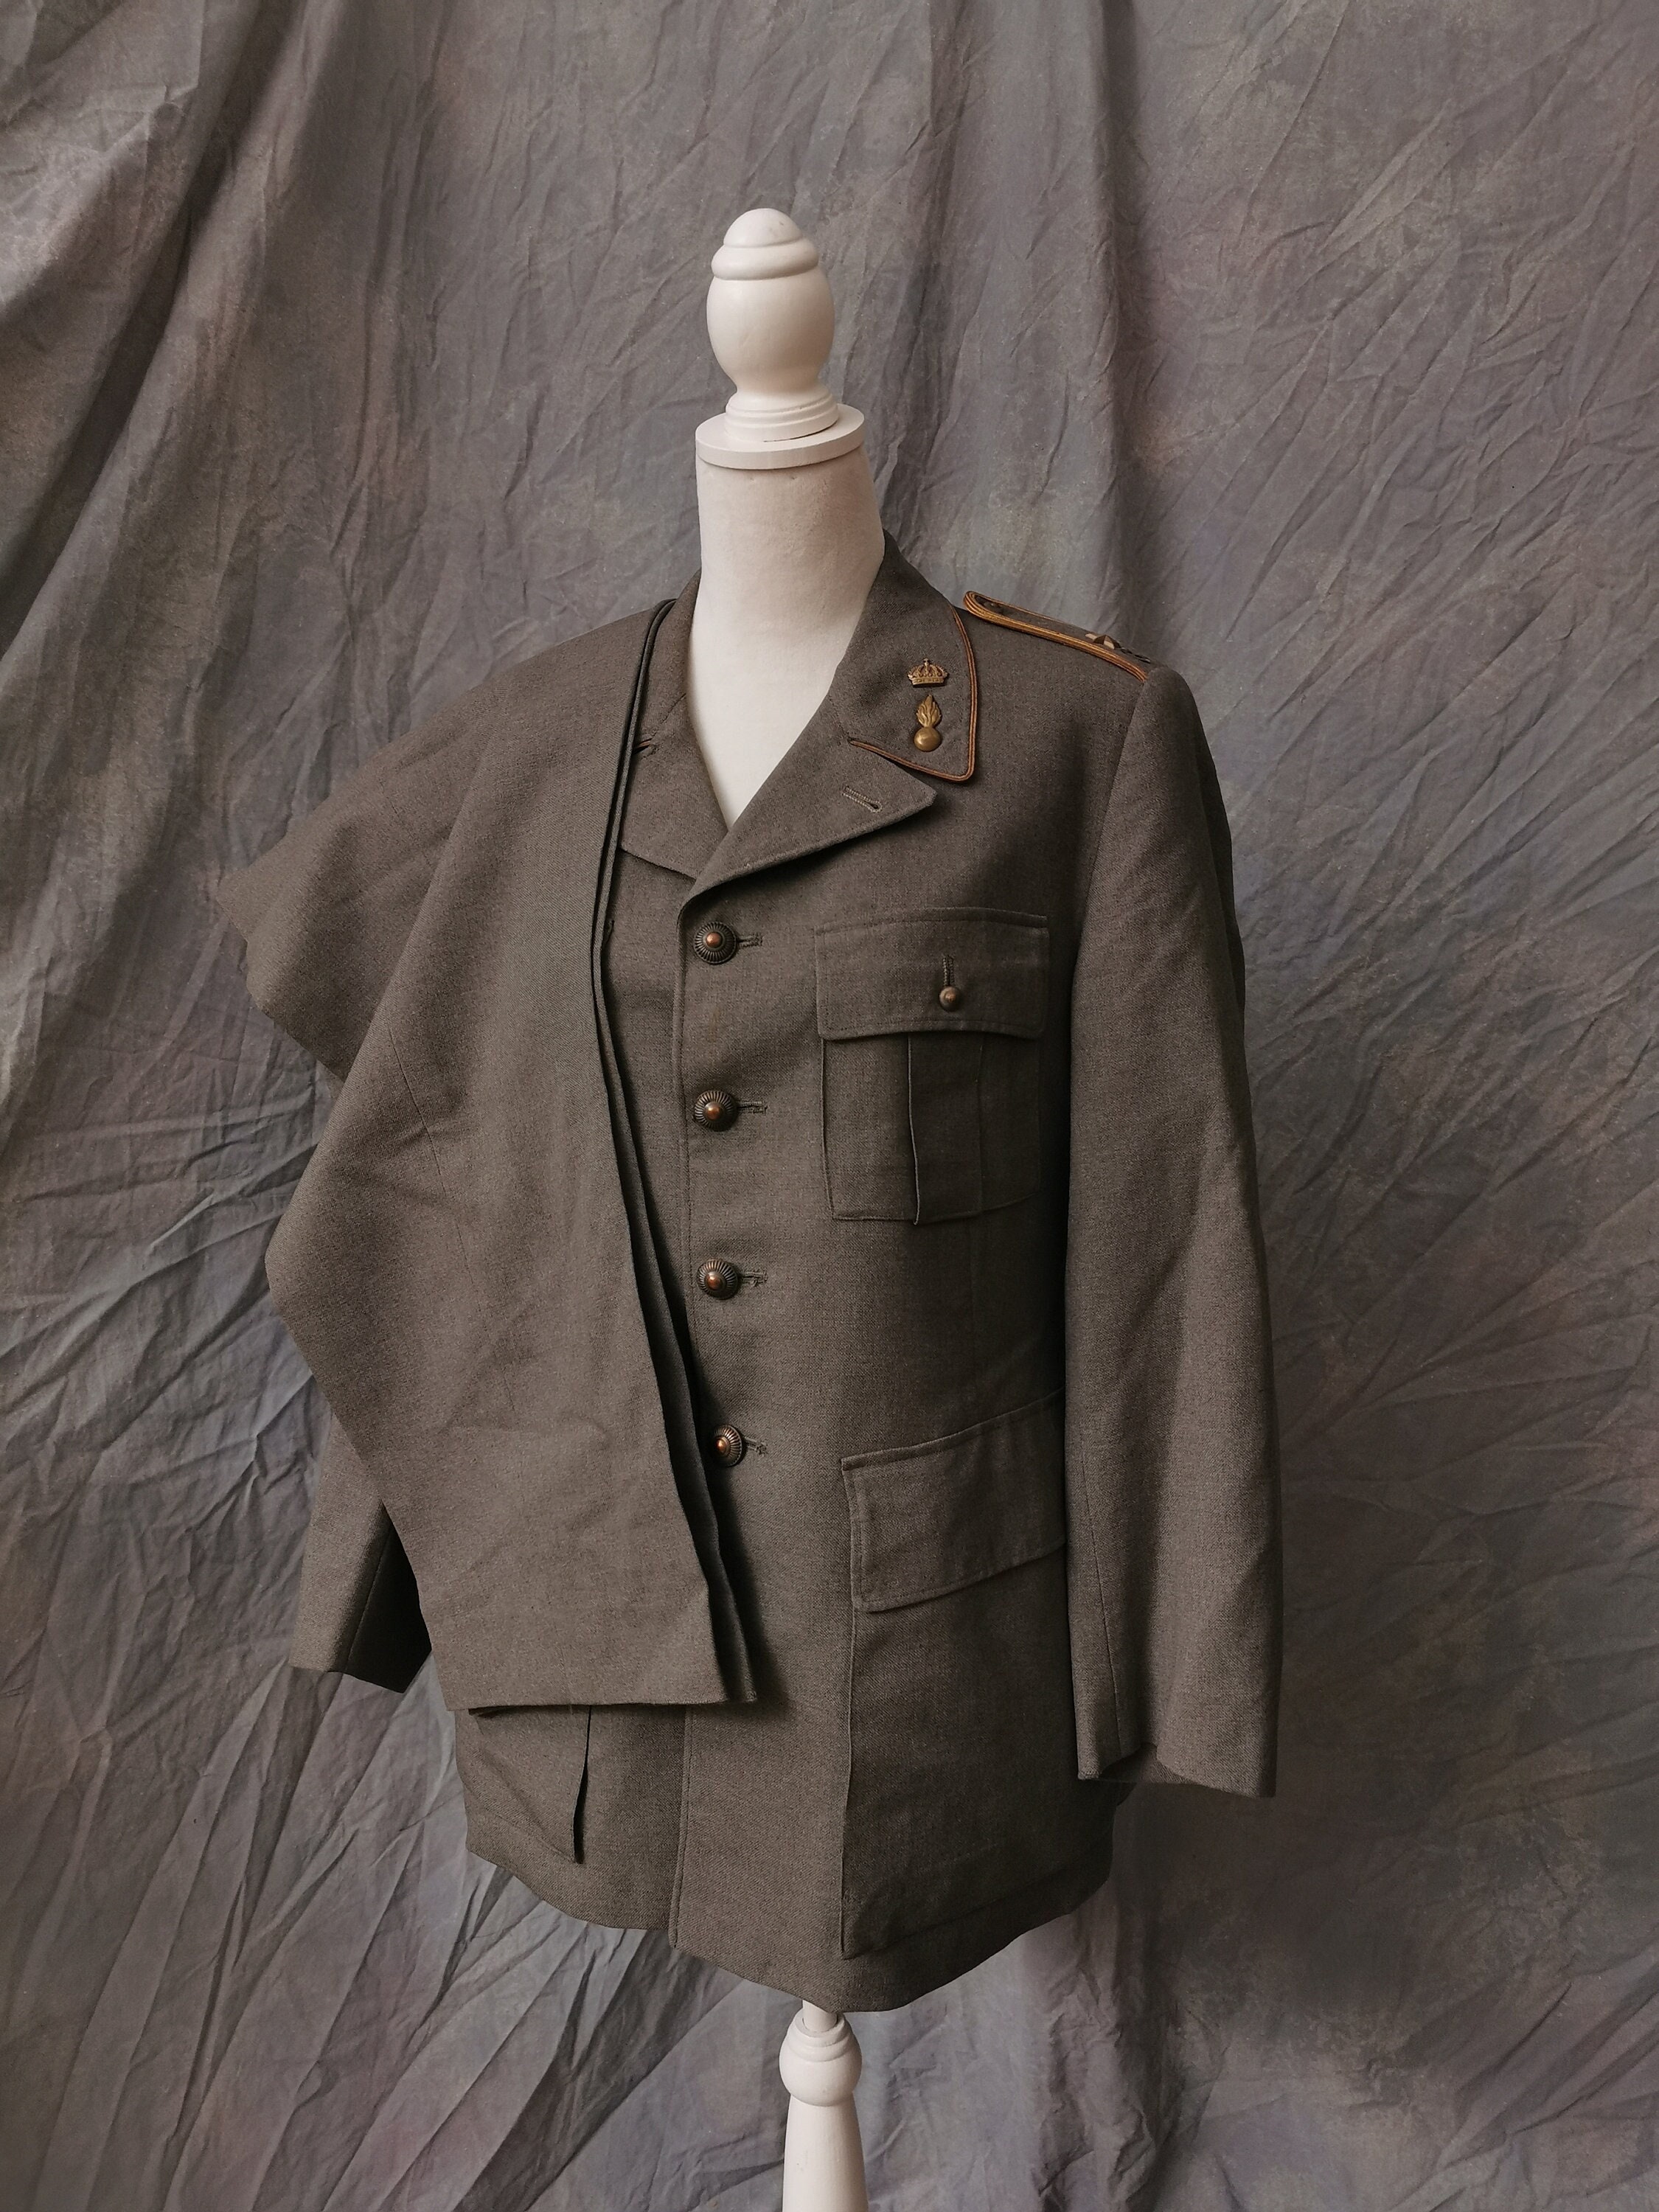 Vintage Military Coat Jacket Liner C152 Soft Olive Green Vtg RARE